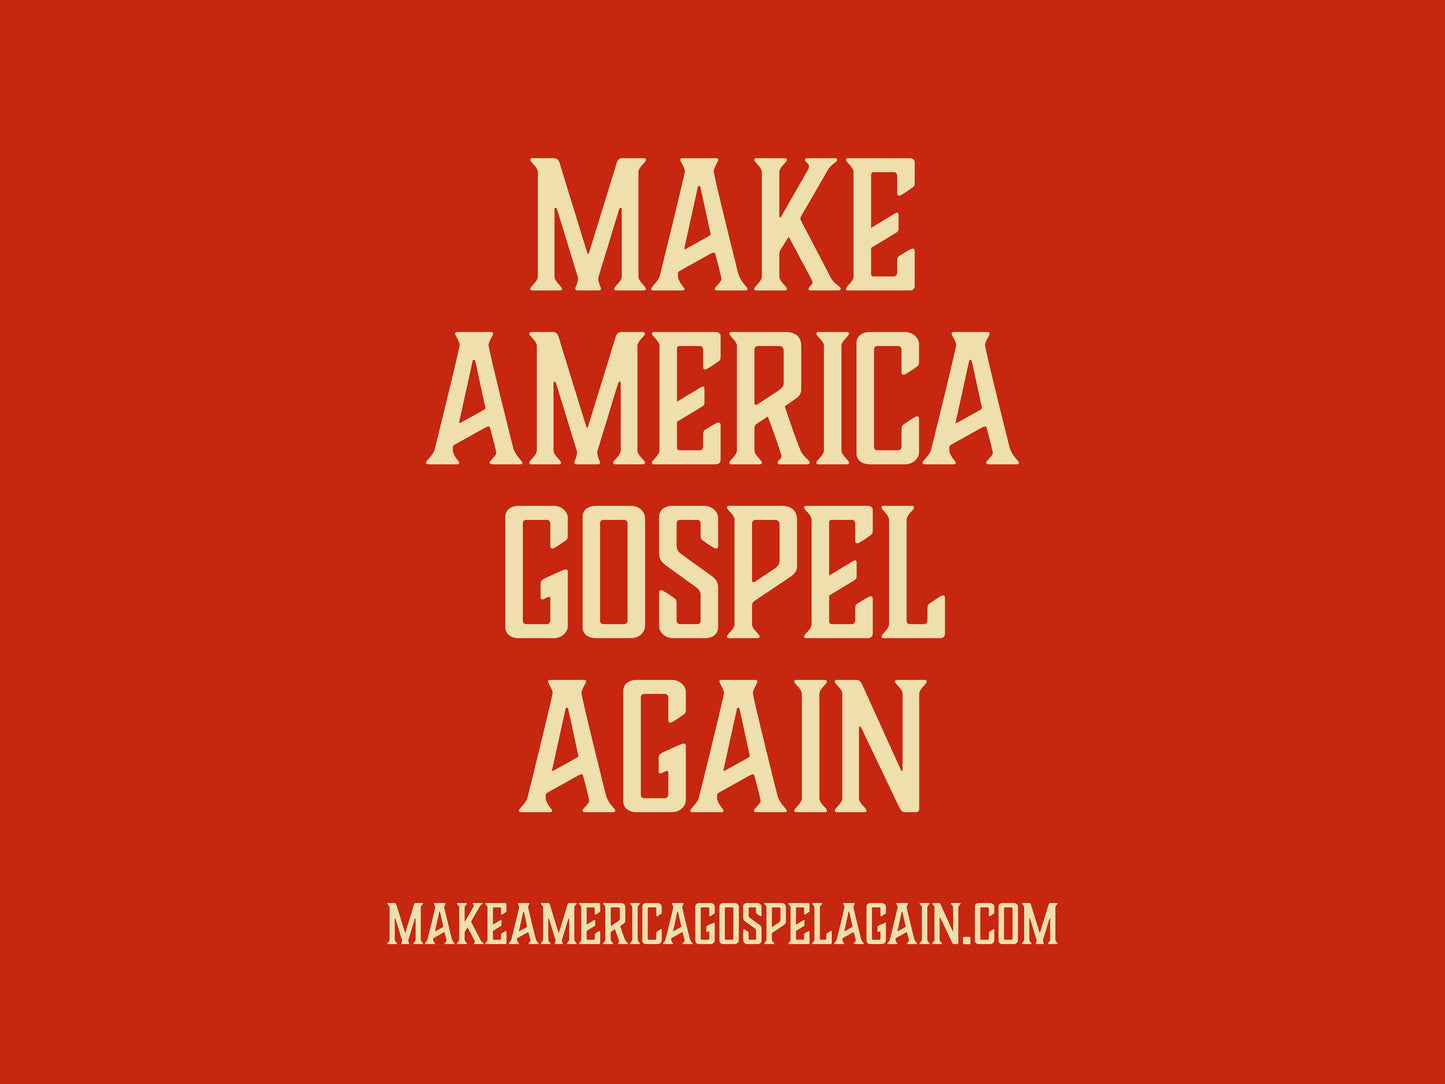 Make America Gospel Again Yard Sign